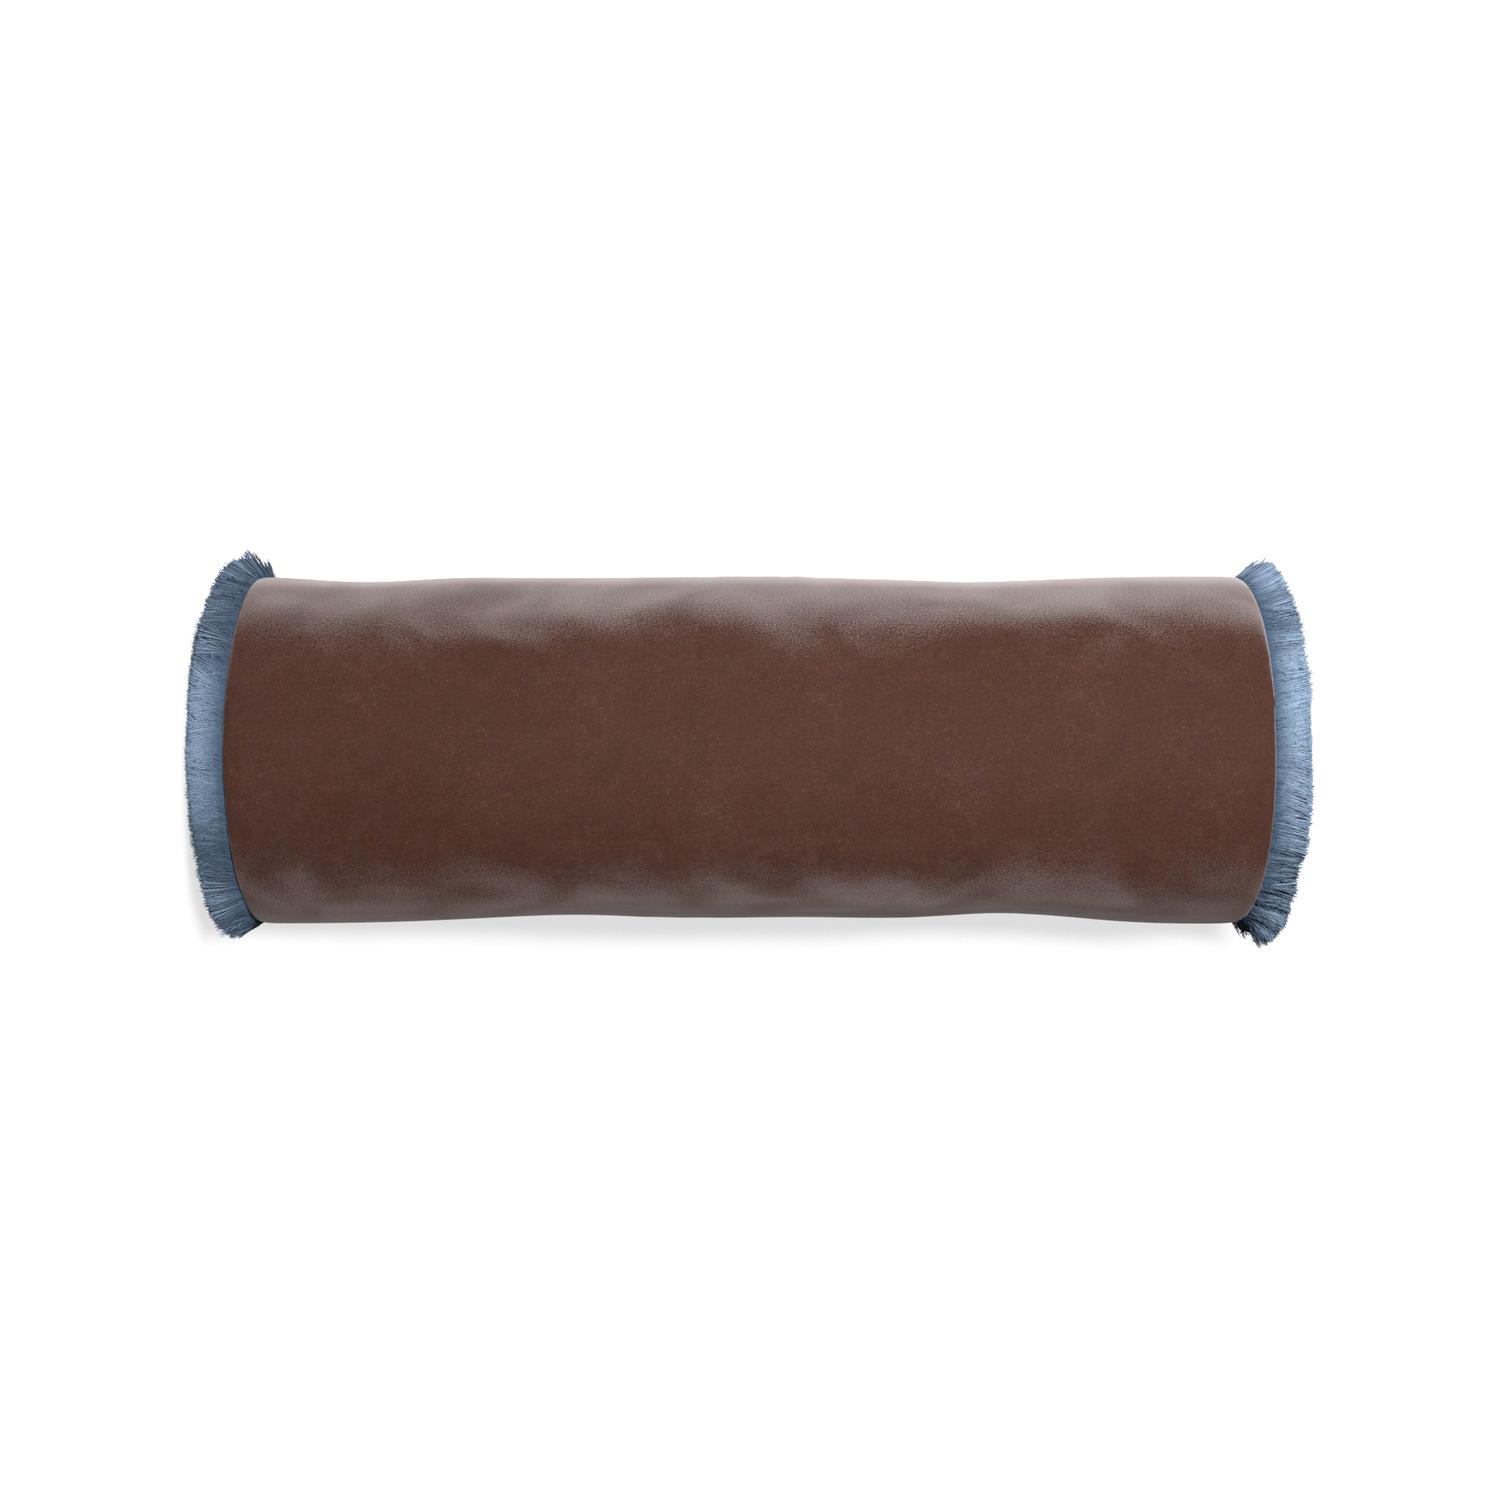 Bolster walnut velvet custom pillow with sky fringe on white background